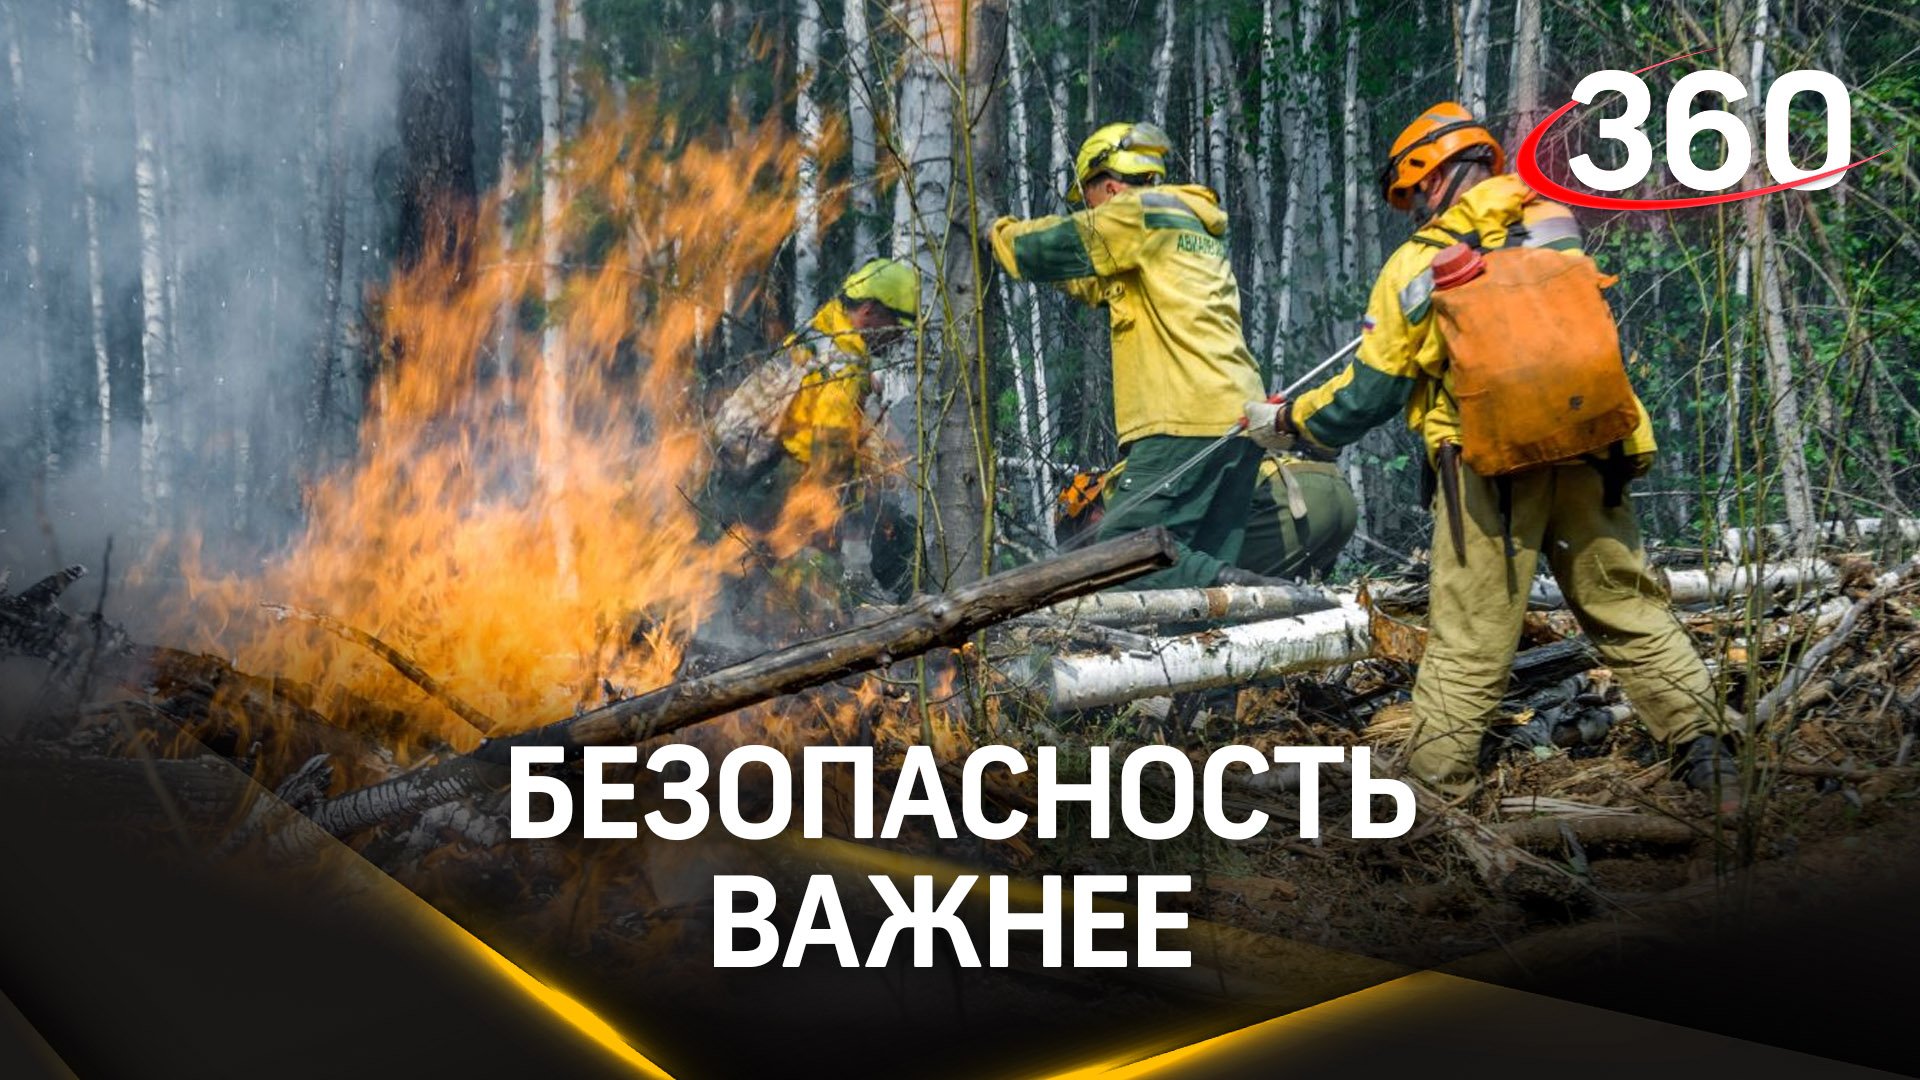 Сотрудники лесной охраны проинформировали жителей о пожароопасном периоде